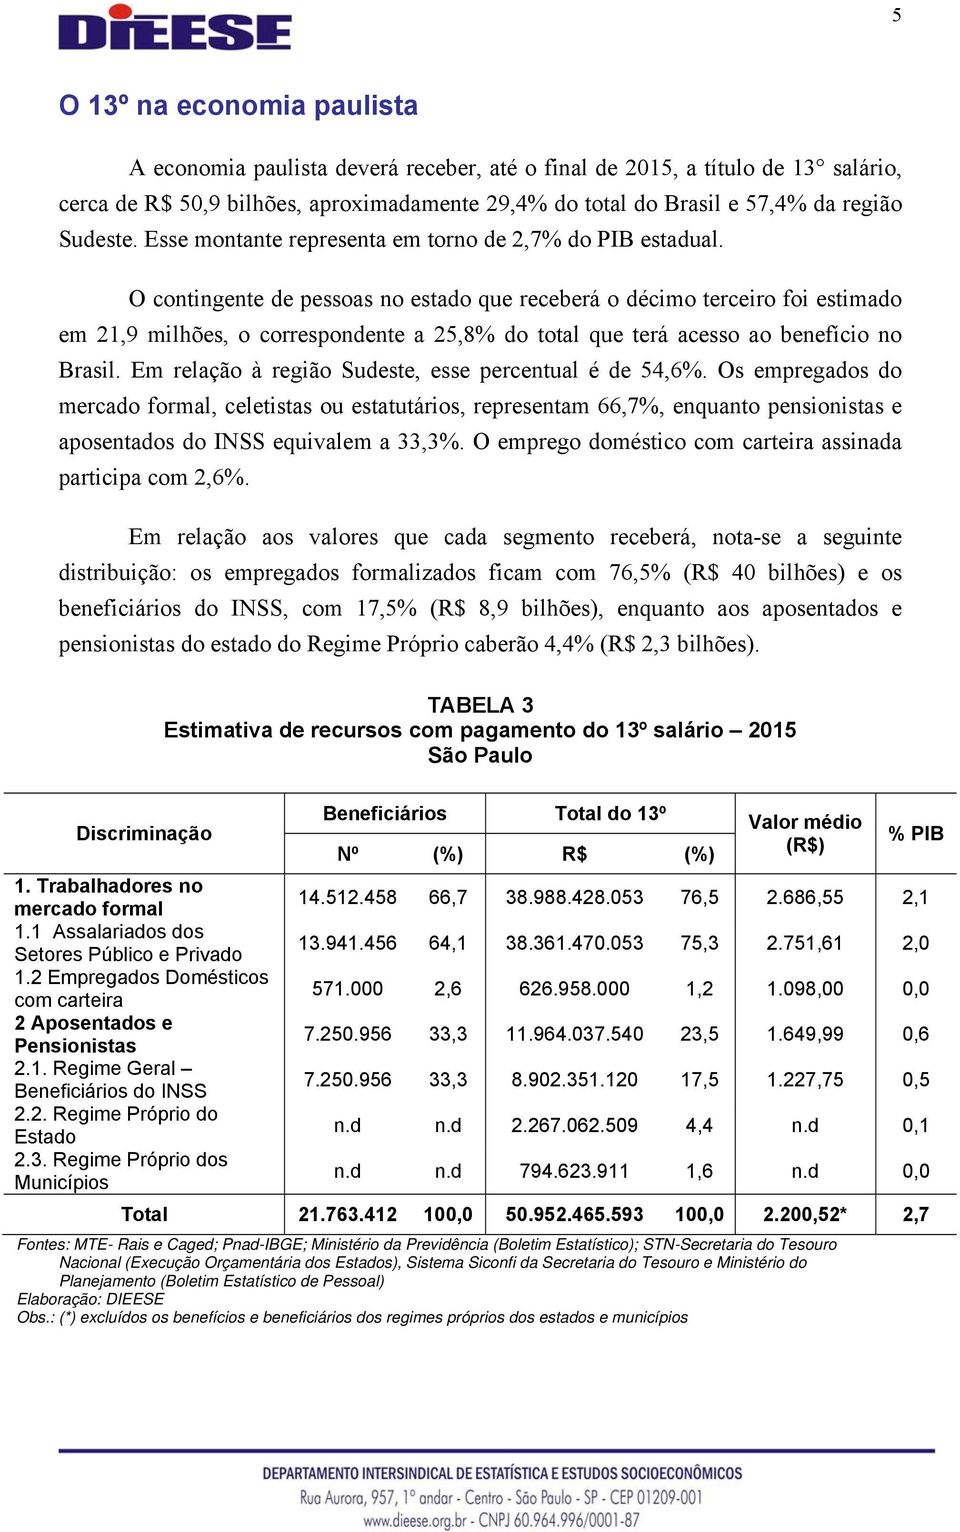 O contingente de pessoas no estado que receberá o décimo terceiro foi estimado em 21,9 milhões, o correspondente a 25,8% do total que terá acesso ao benefício no Brasil.